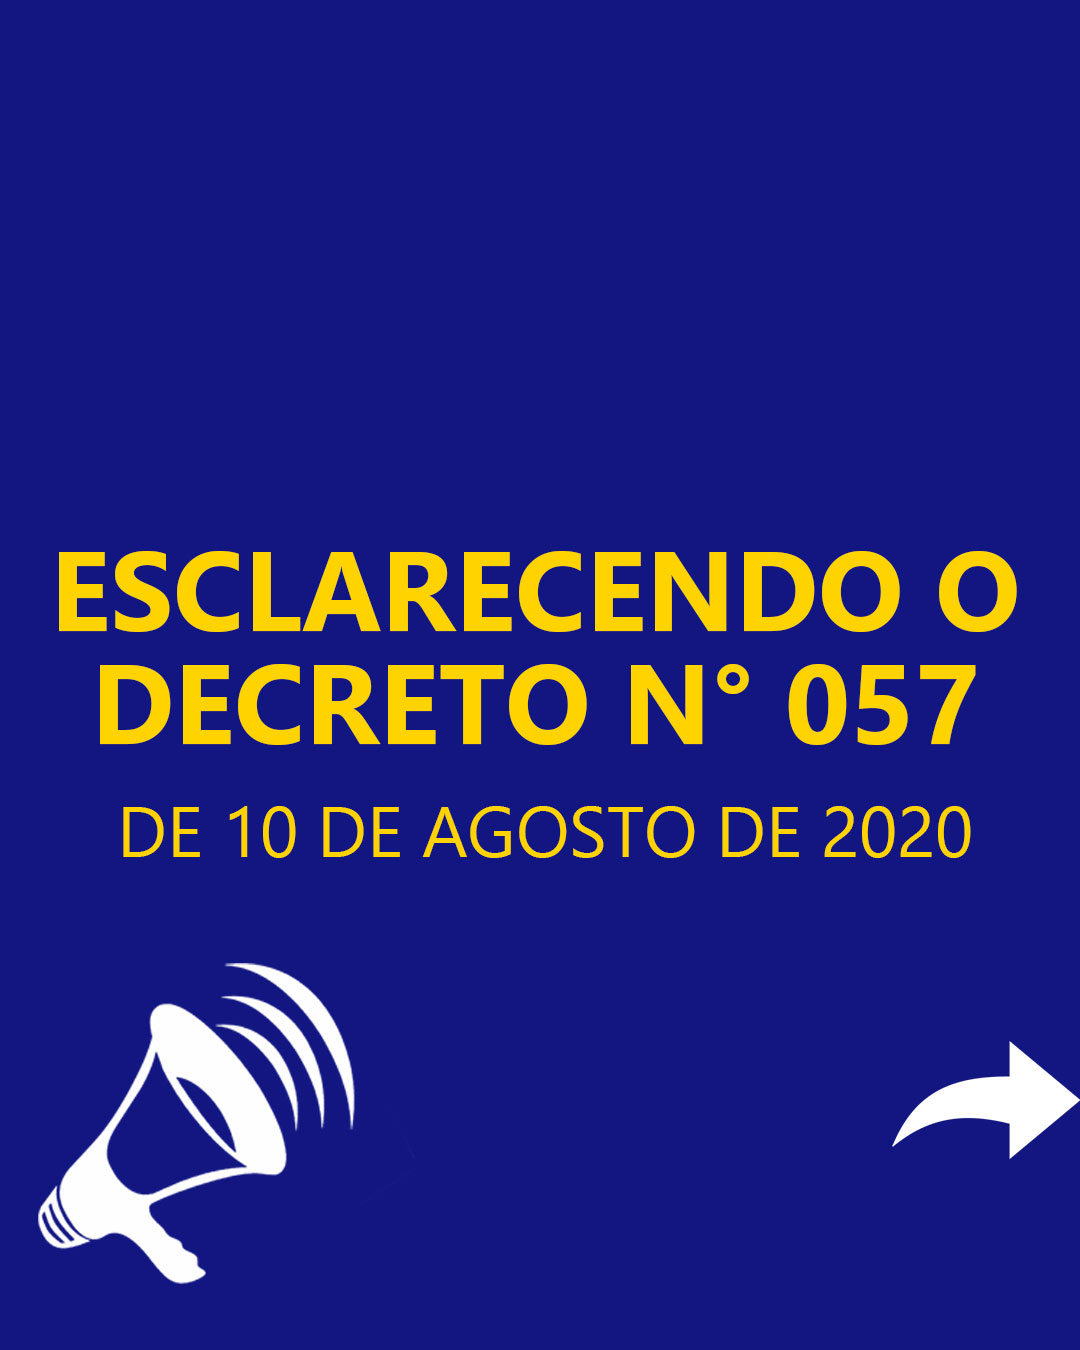 ESCLARECENDO O DECRETO N° 057, DE 10 DE AGOSTO DE 2020